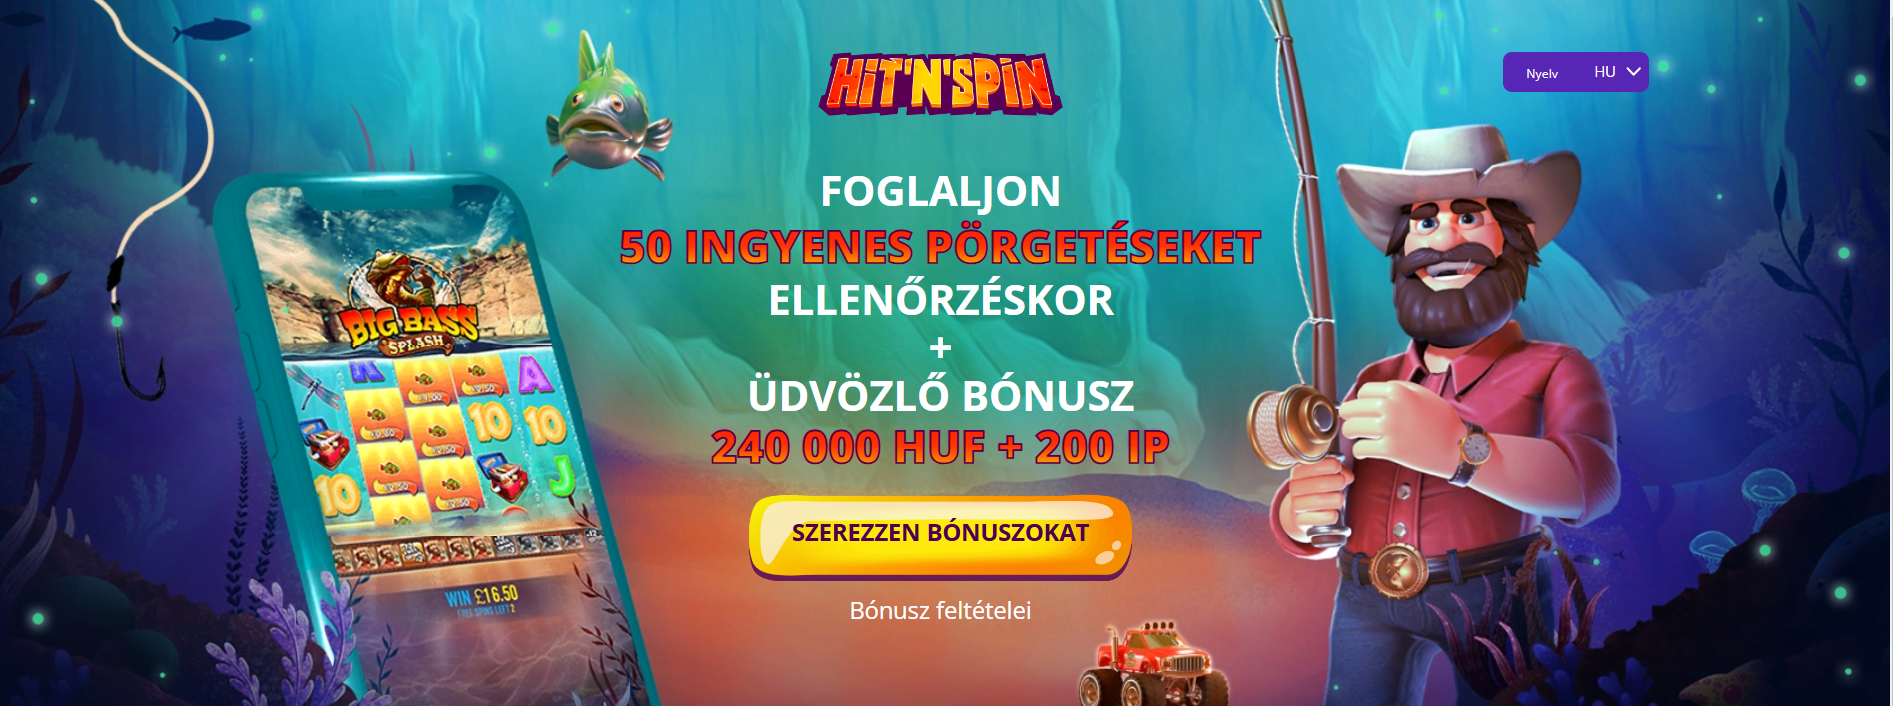 HitnSpin Casino 50 Free Spins No Deposit Bonus